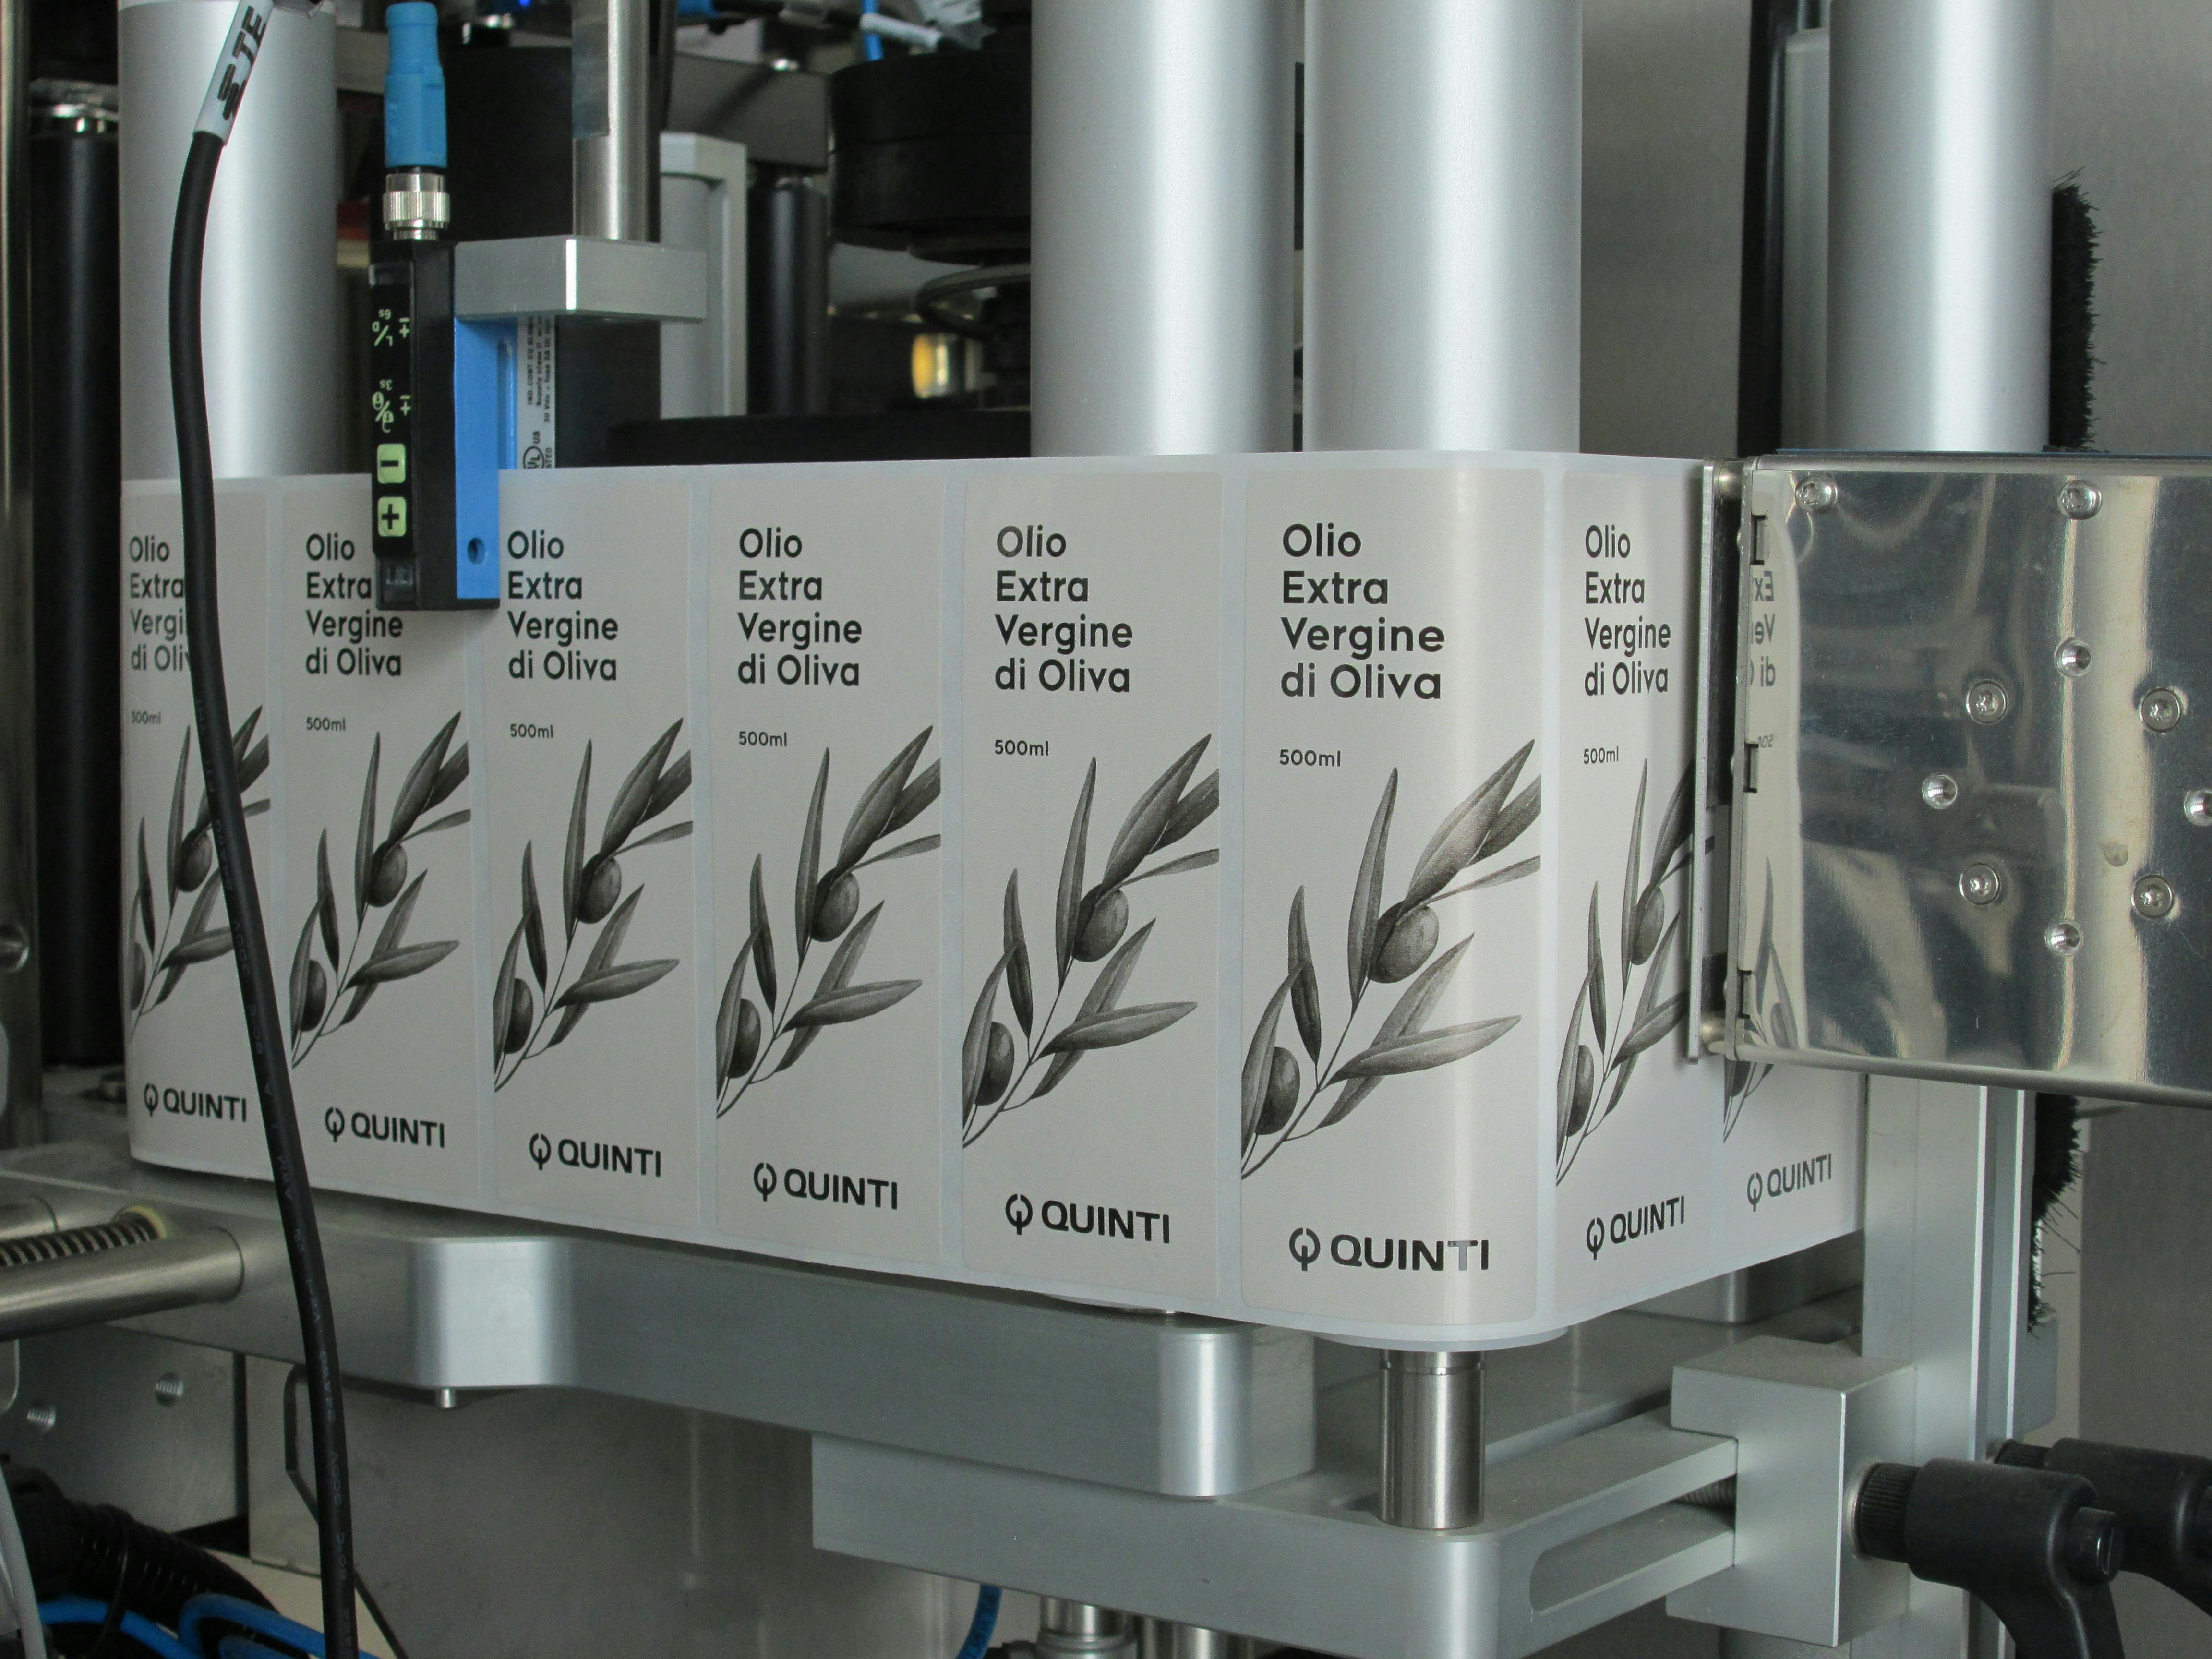 Dettaglio della macchina dove si vede etichettte rettangolari su bobina, indicate per bottiglia olio, raffiguranti ramo olivo e logo Quinti